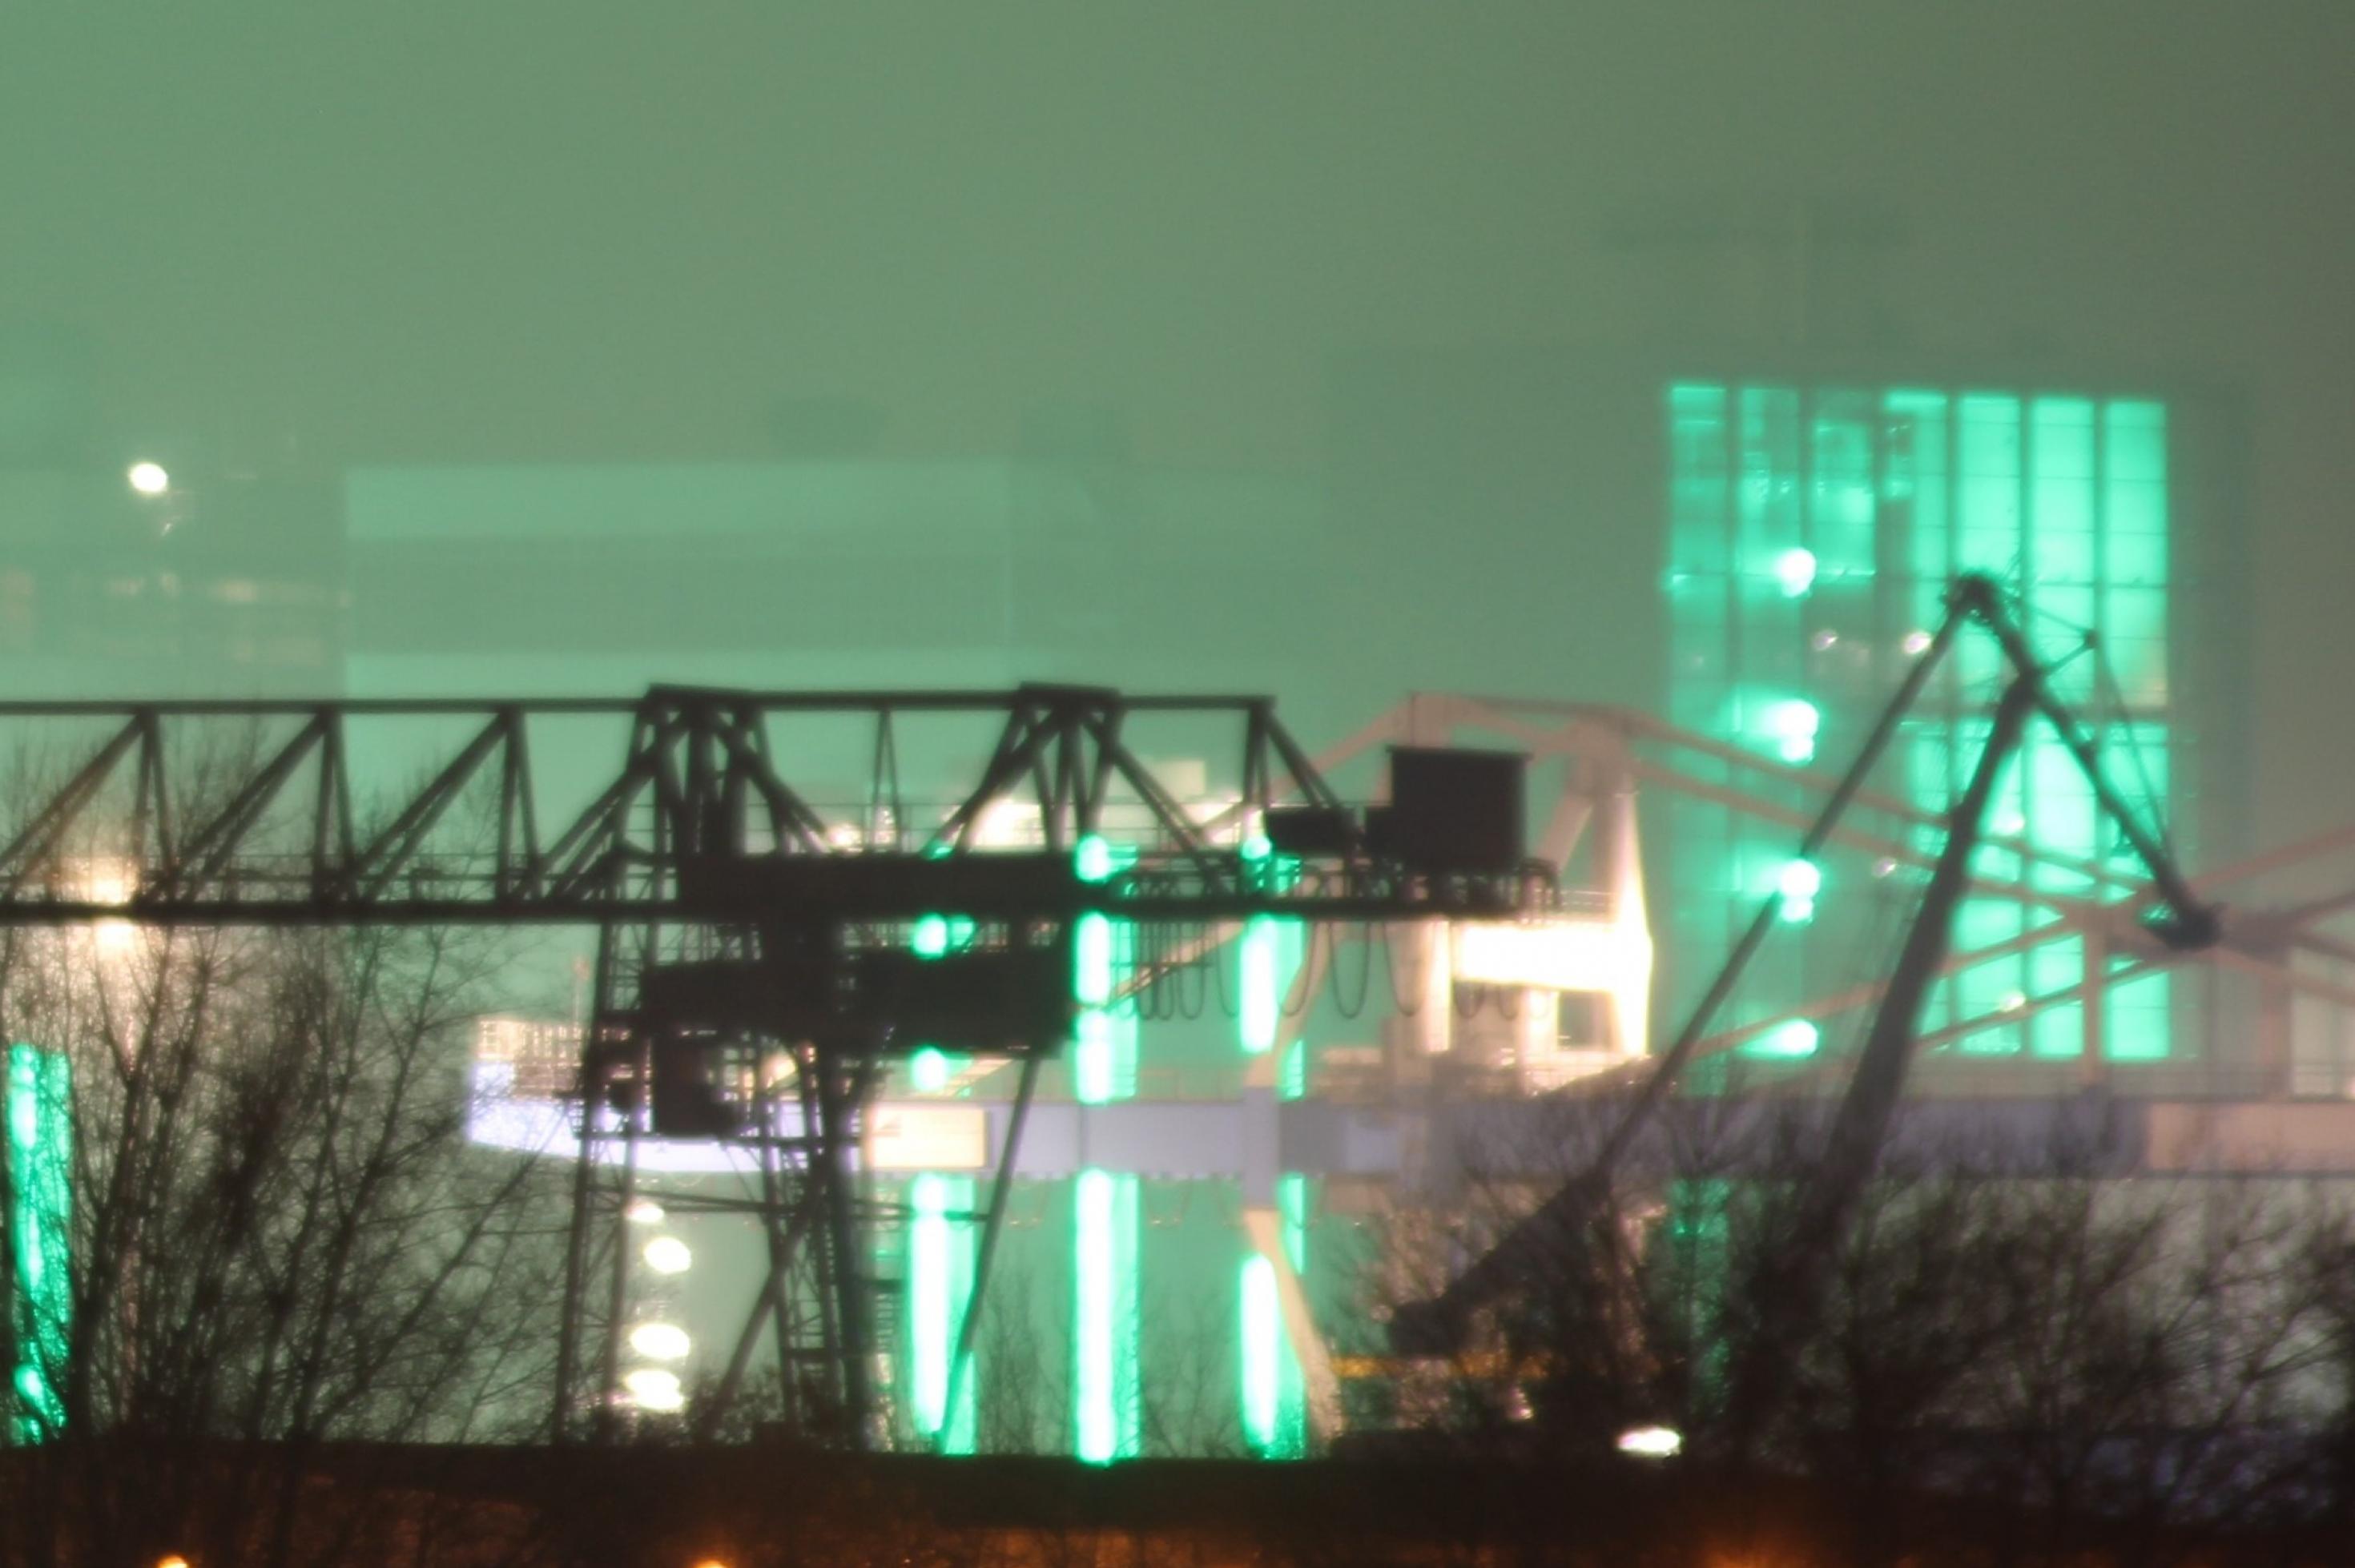 Industriekulisse:  Die Kräne des Düsseldorfer Hafens werden grün beleuchtet